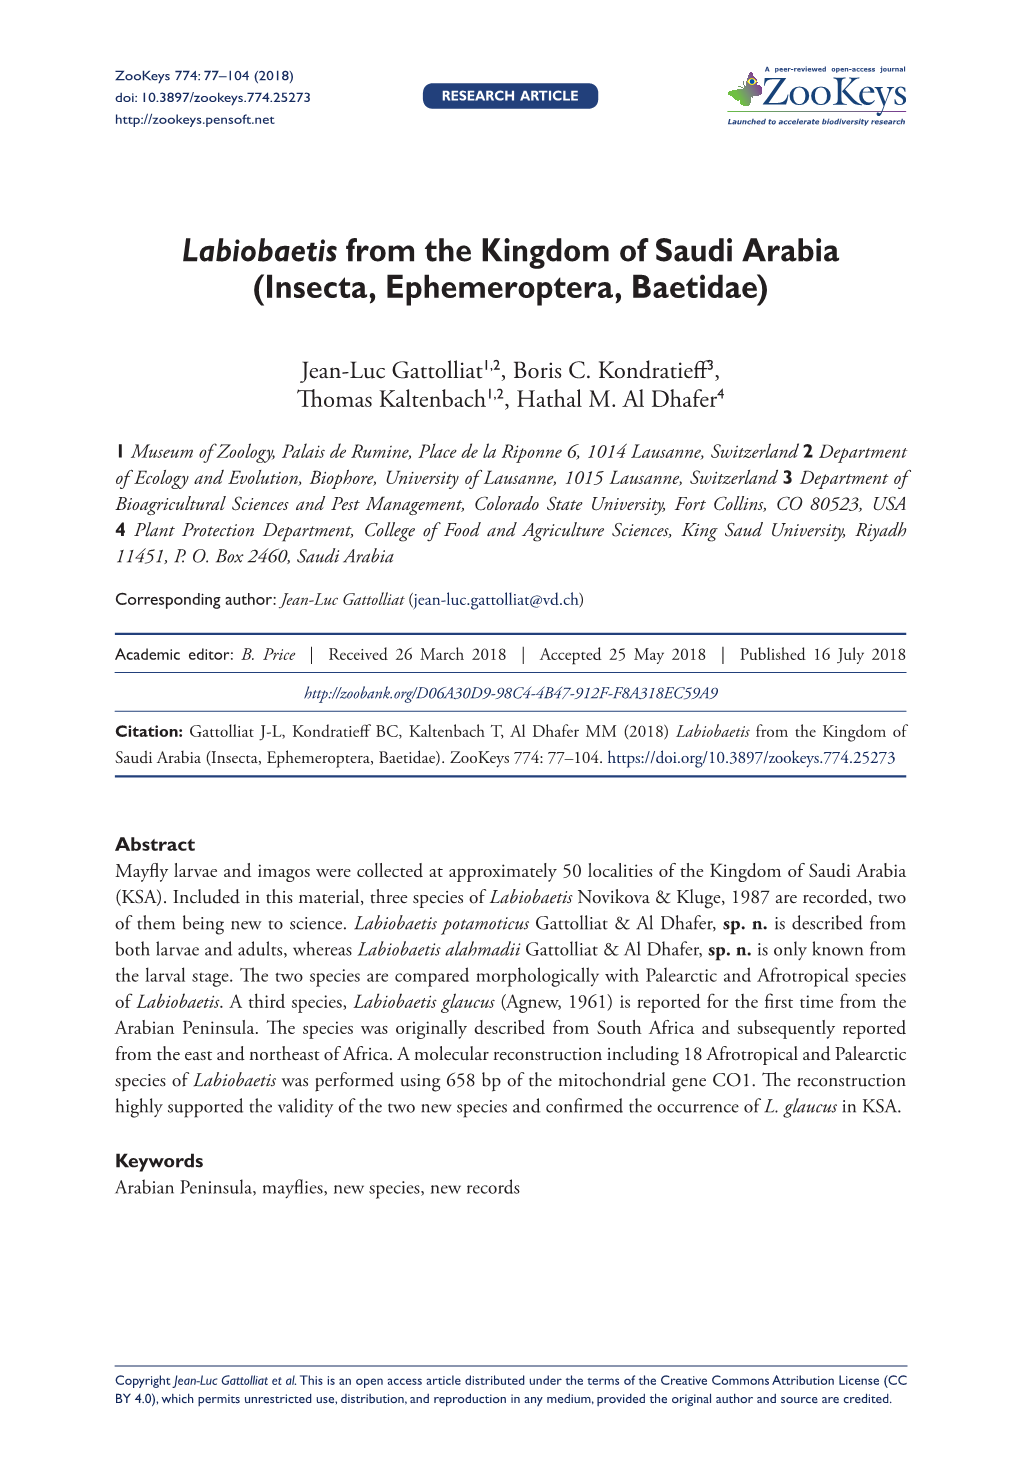 Labiobaetis from the Kingdom of Saudi Arabia (Insecta, Ephemeroptera, Baetidae)